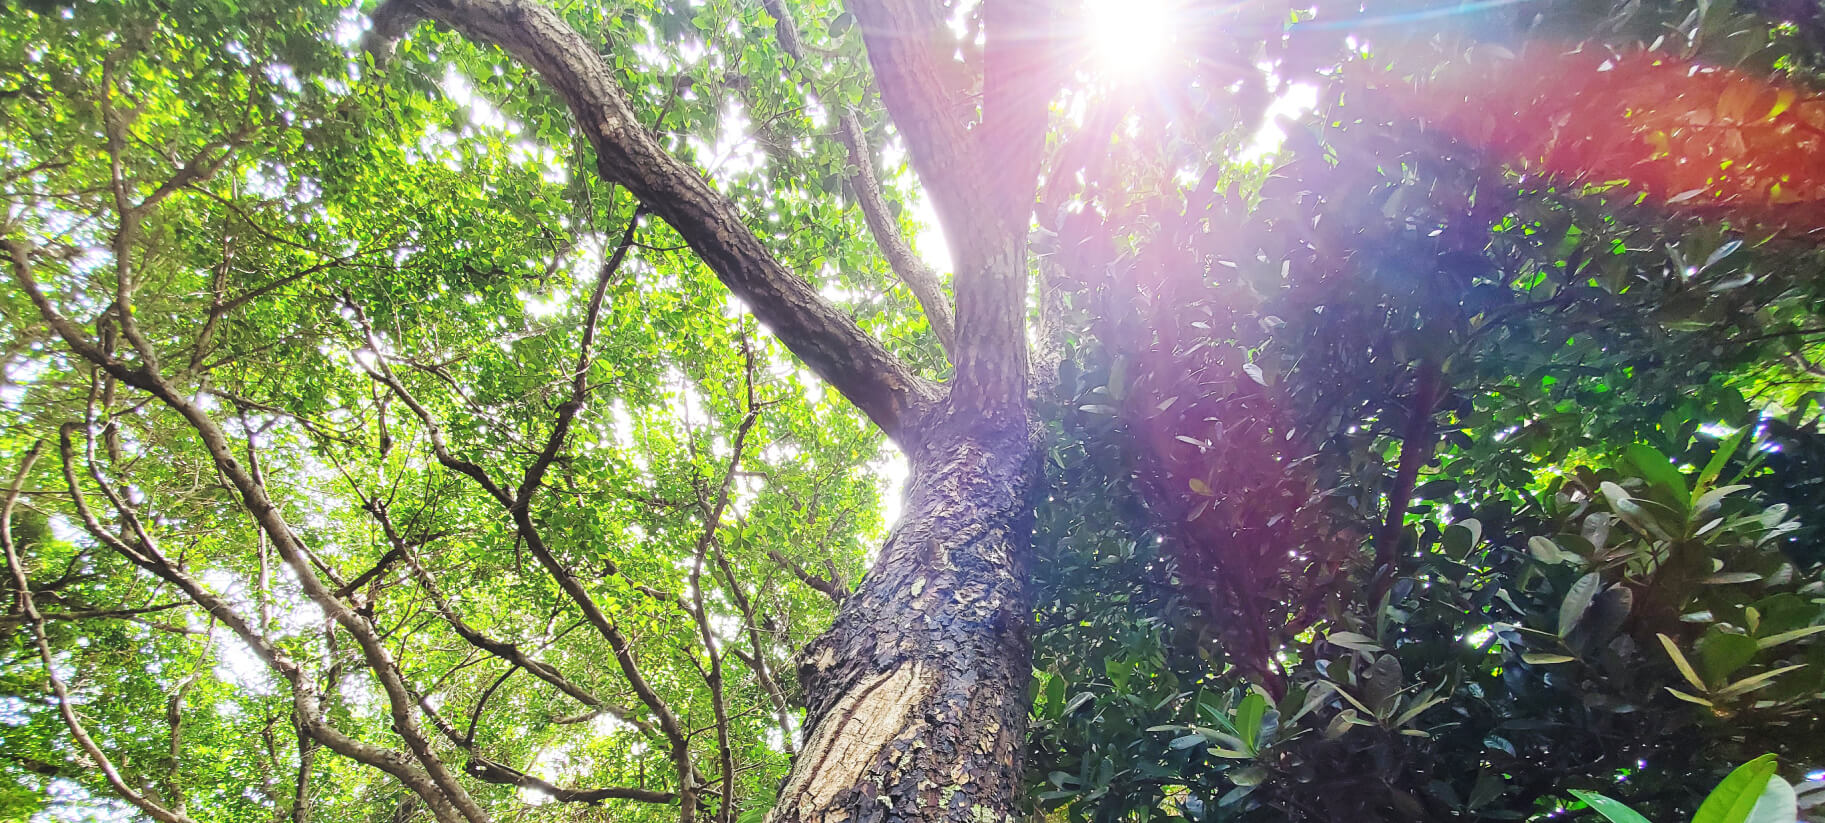 タマヌの樹木の写真